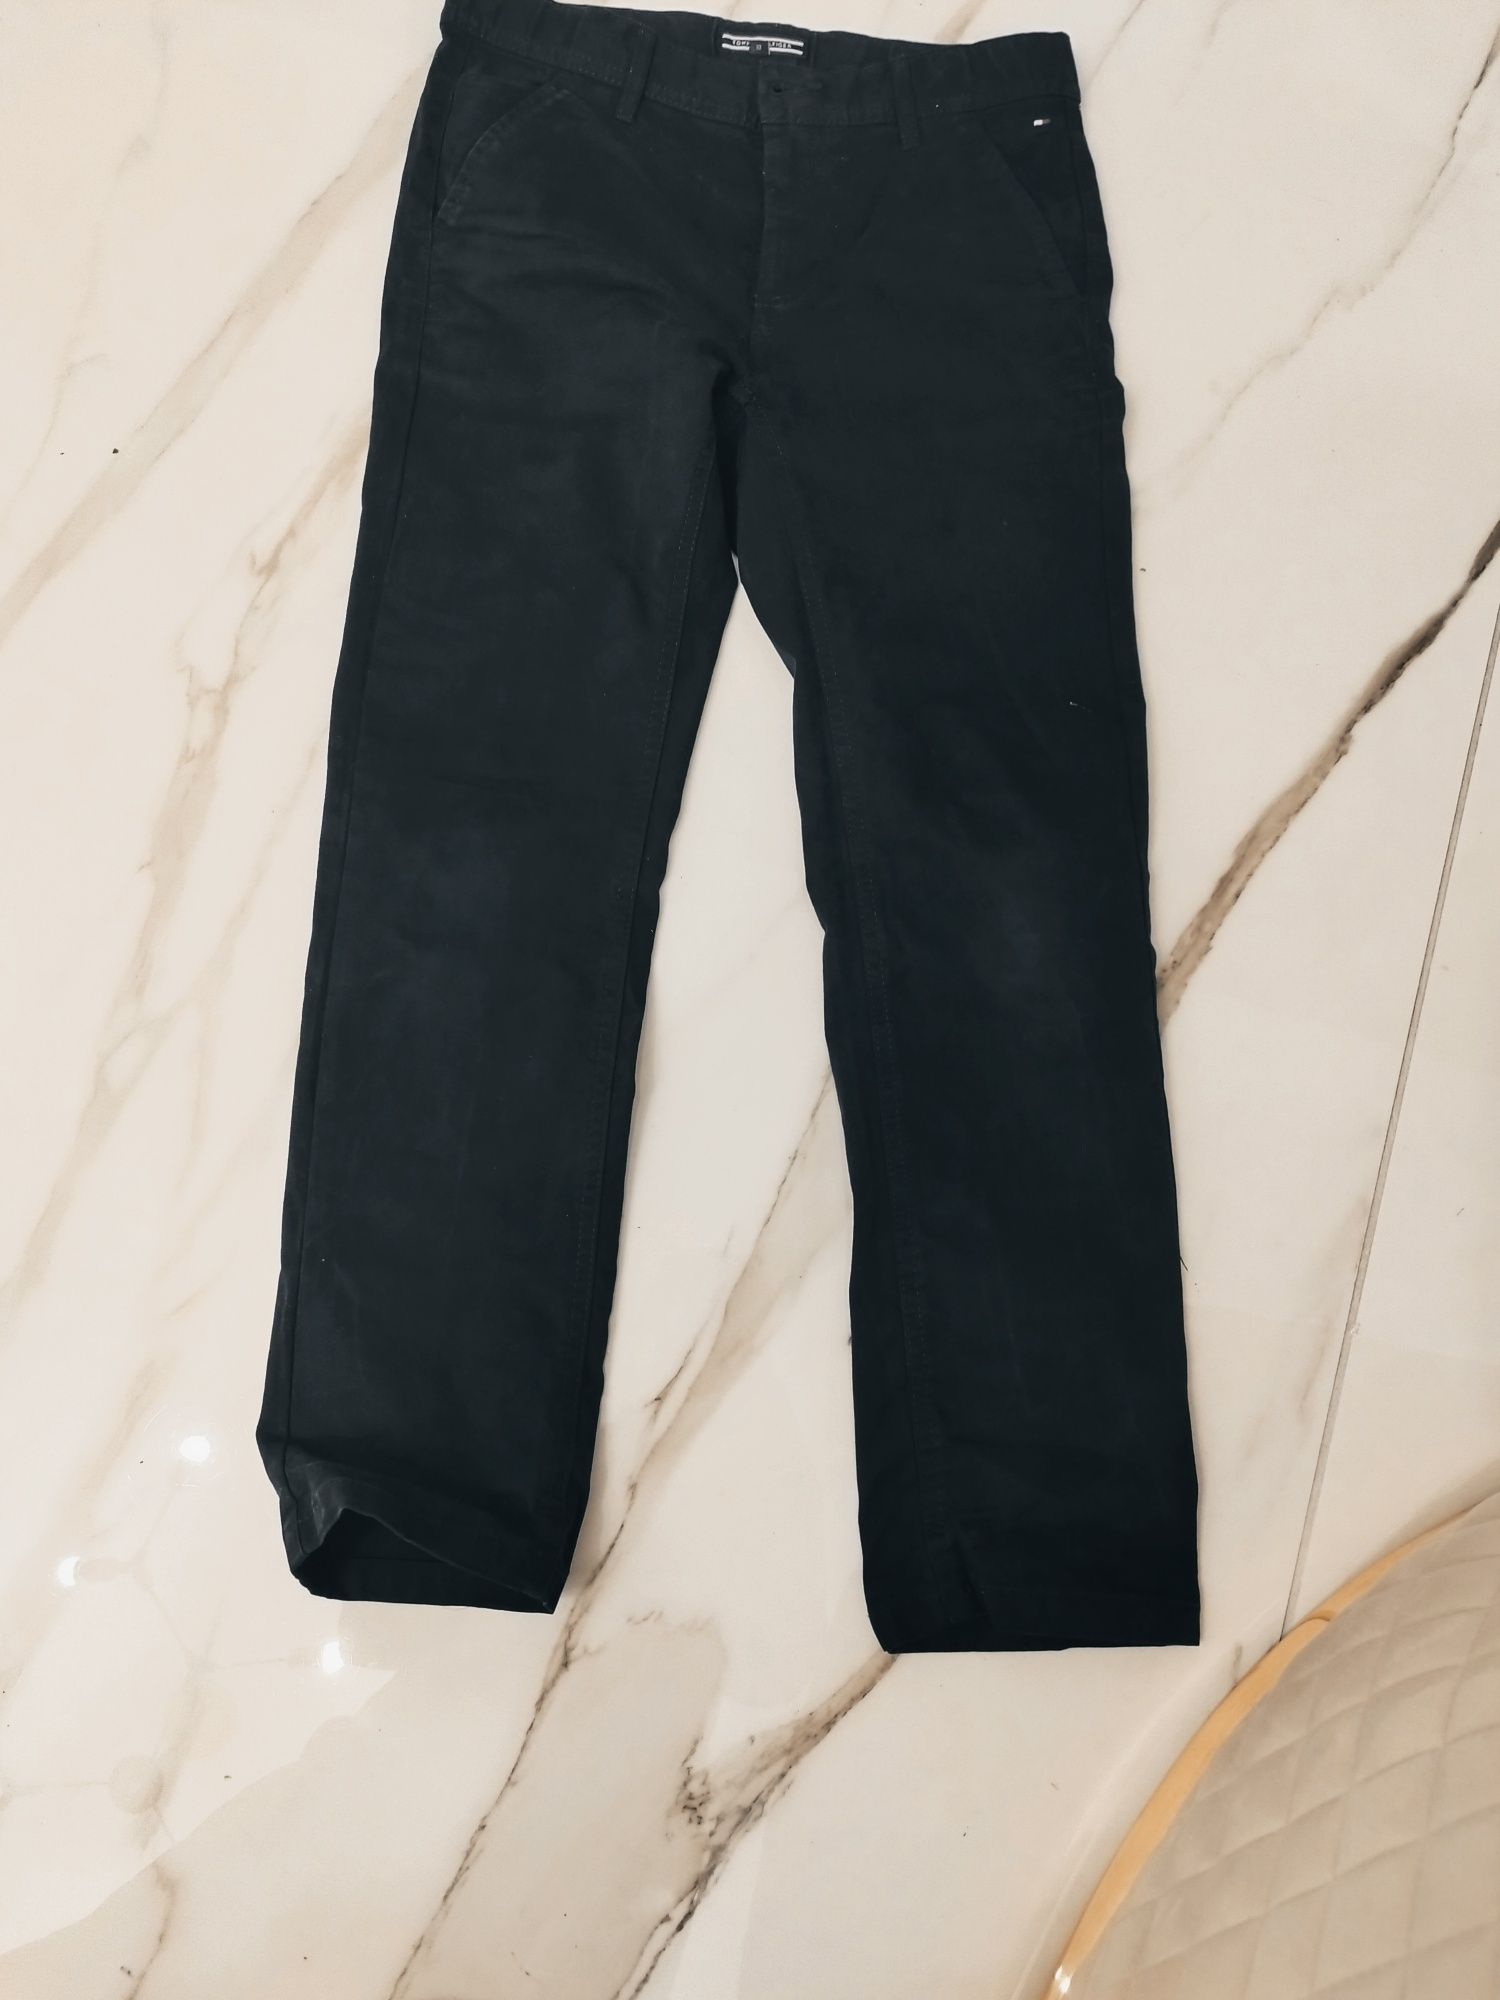 Pantaloni chino Tommy Hilfiger, mărimea 140